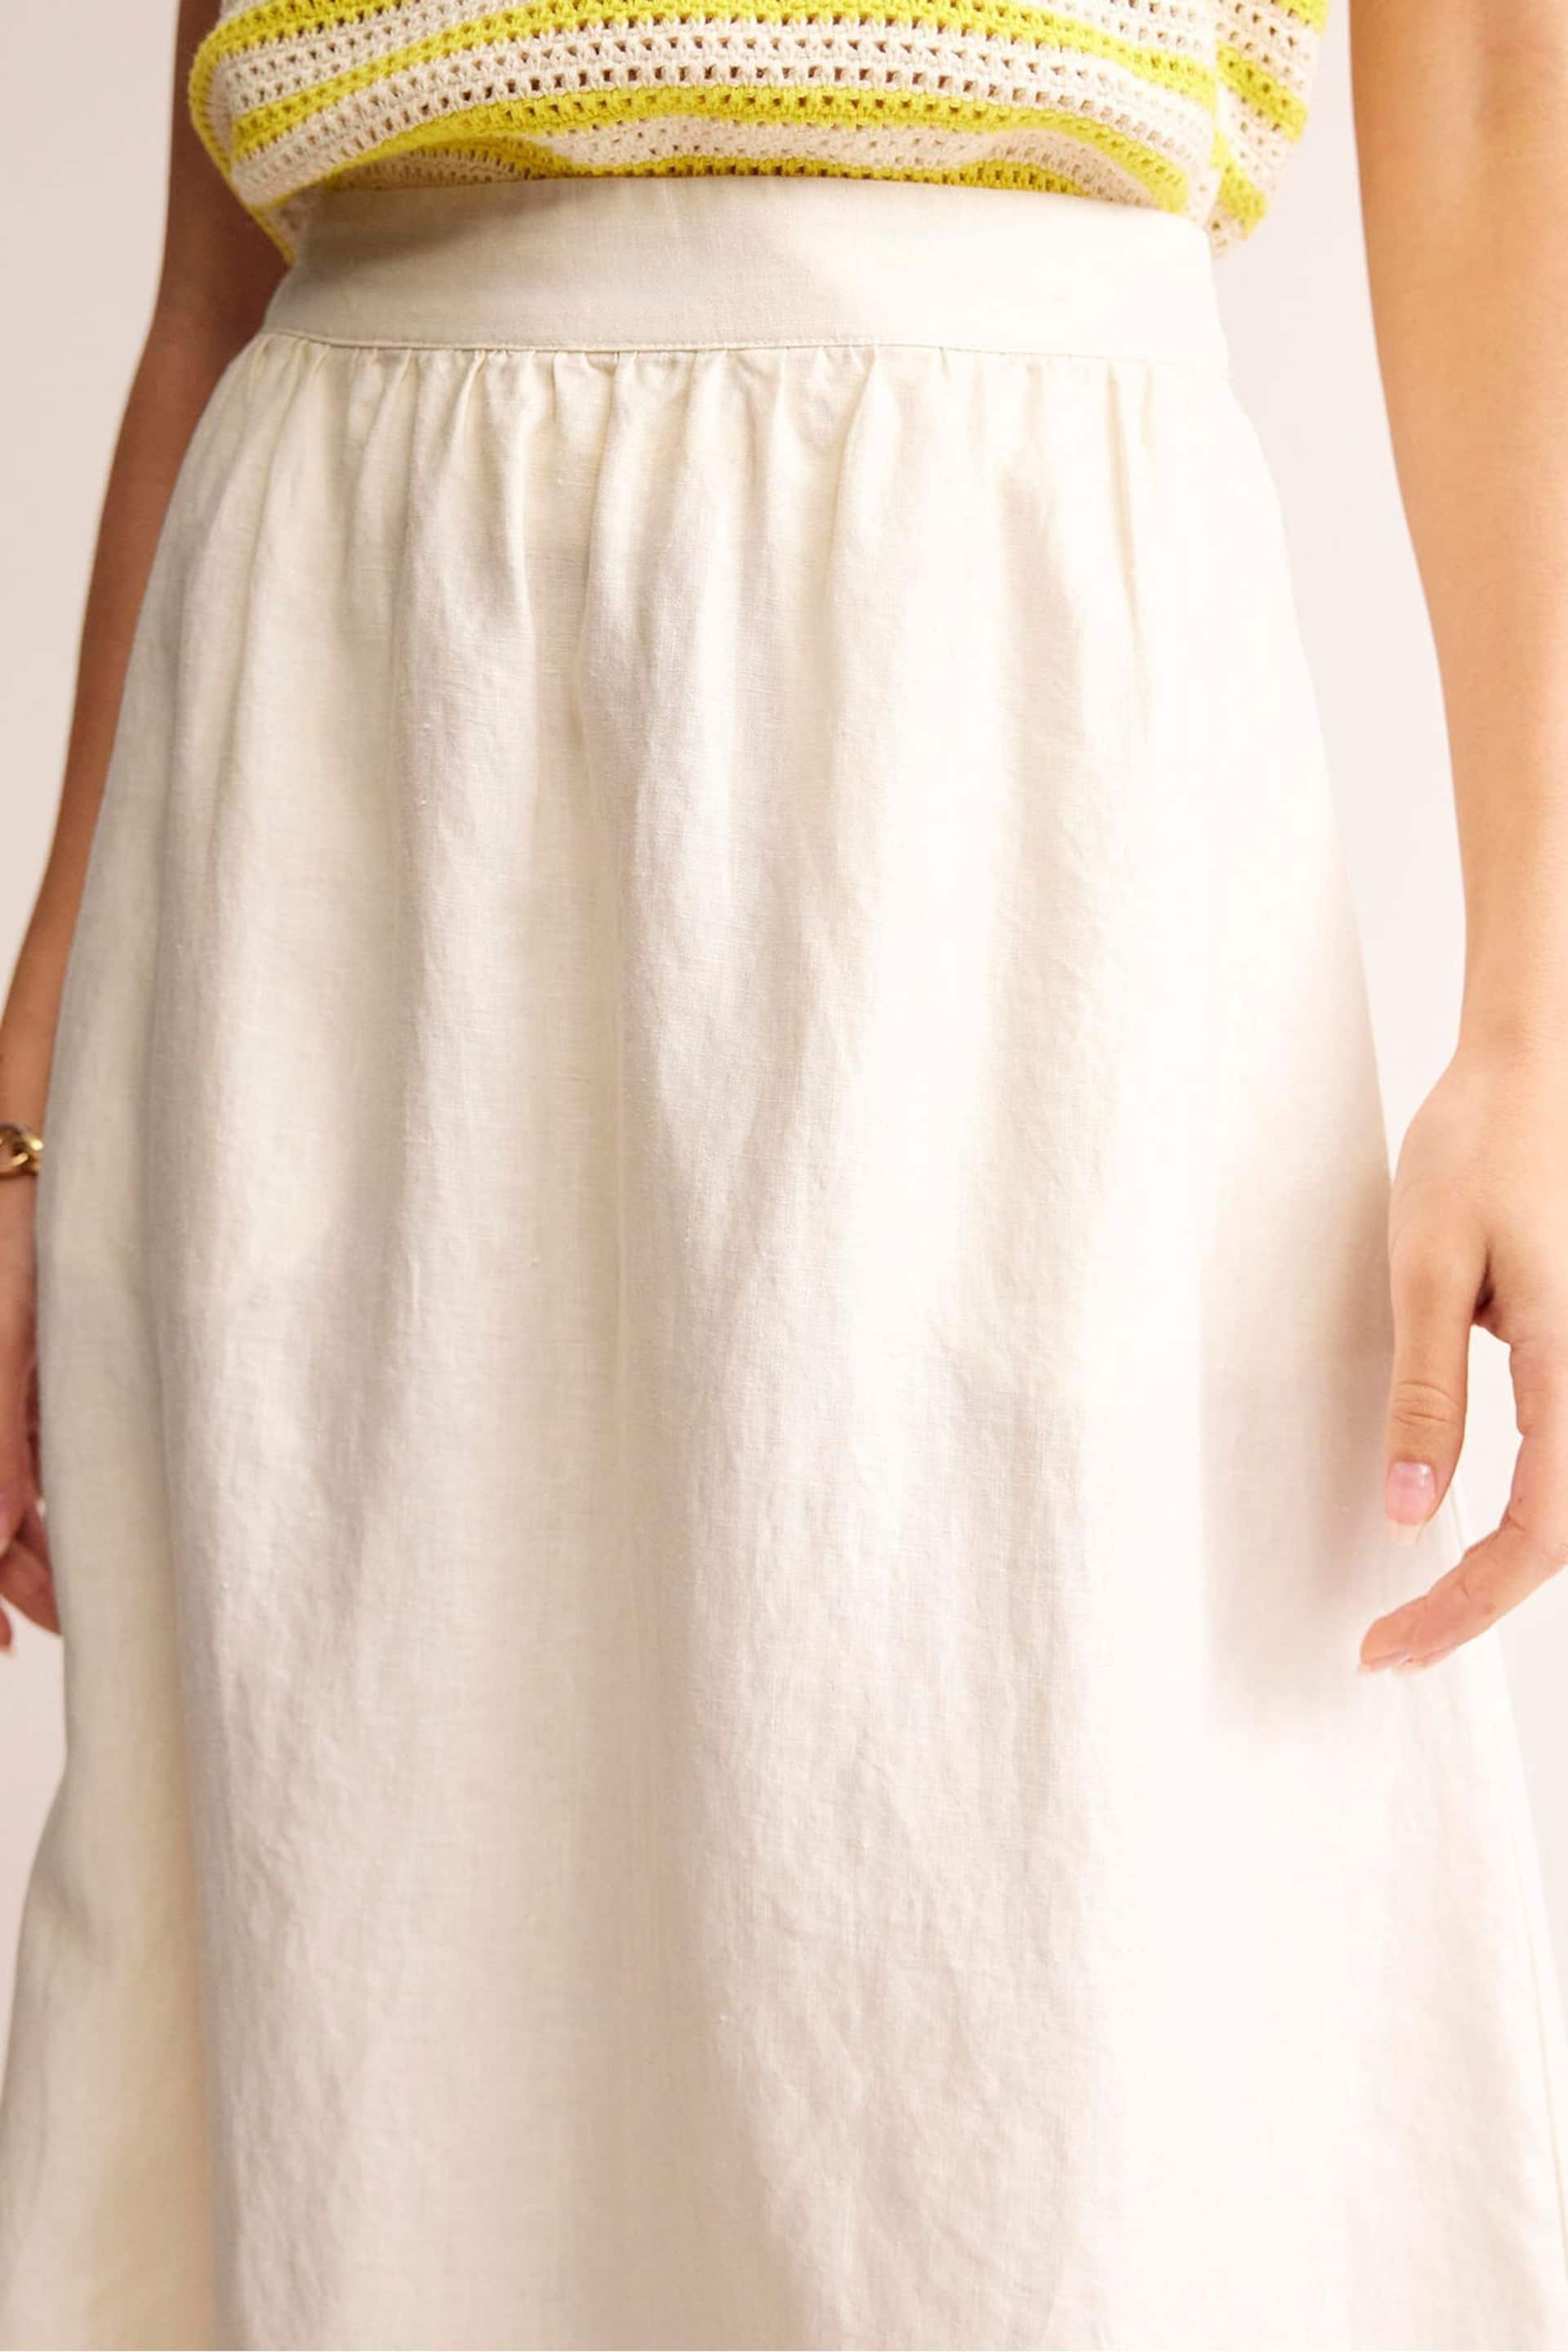 Boden Cream Petite Florence Linen Midi Skirt - Image 2 of 5